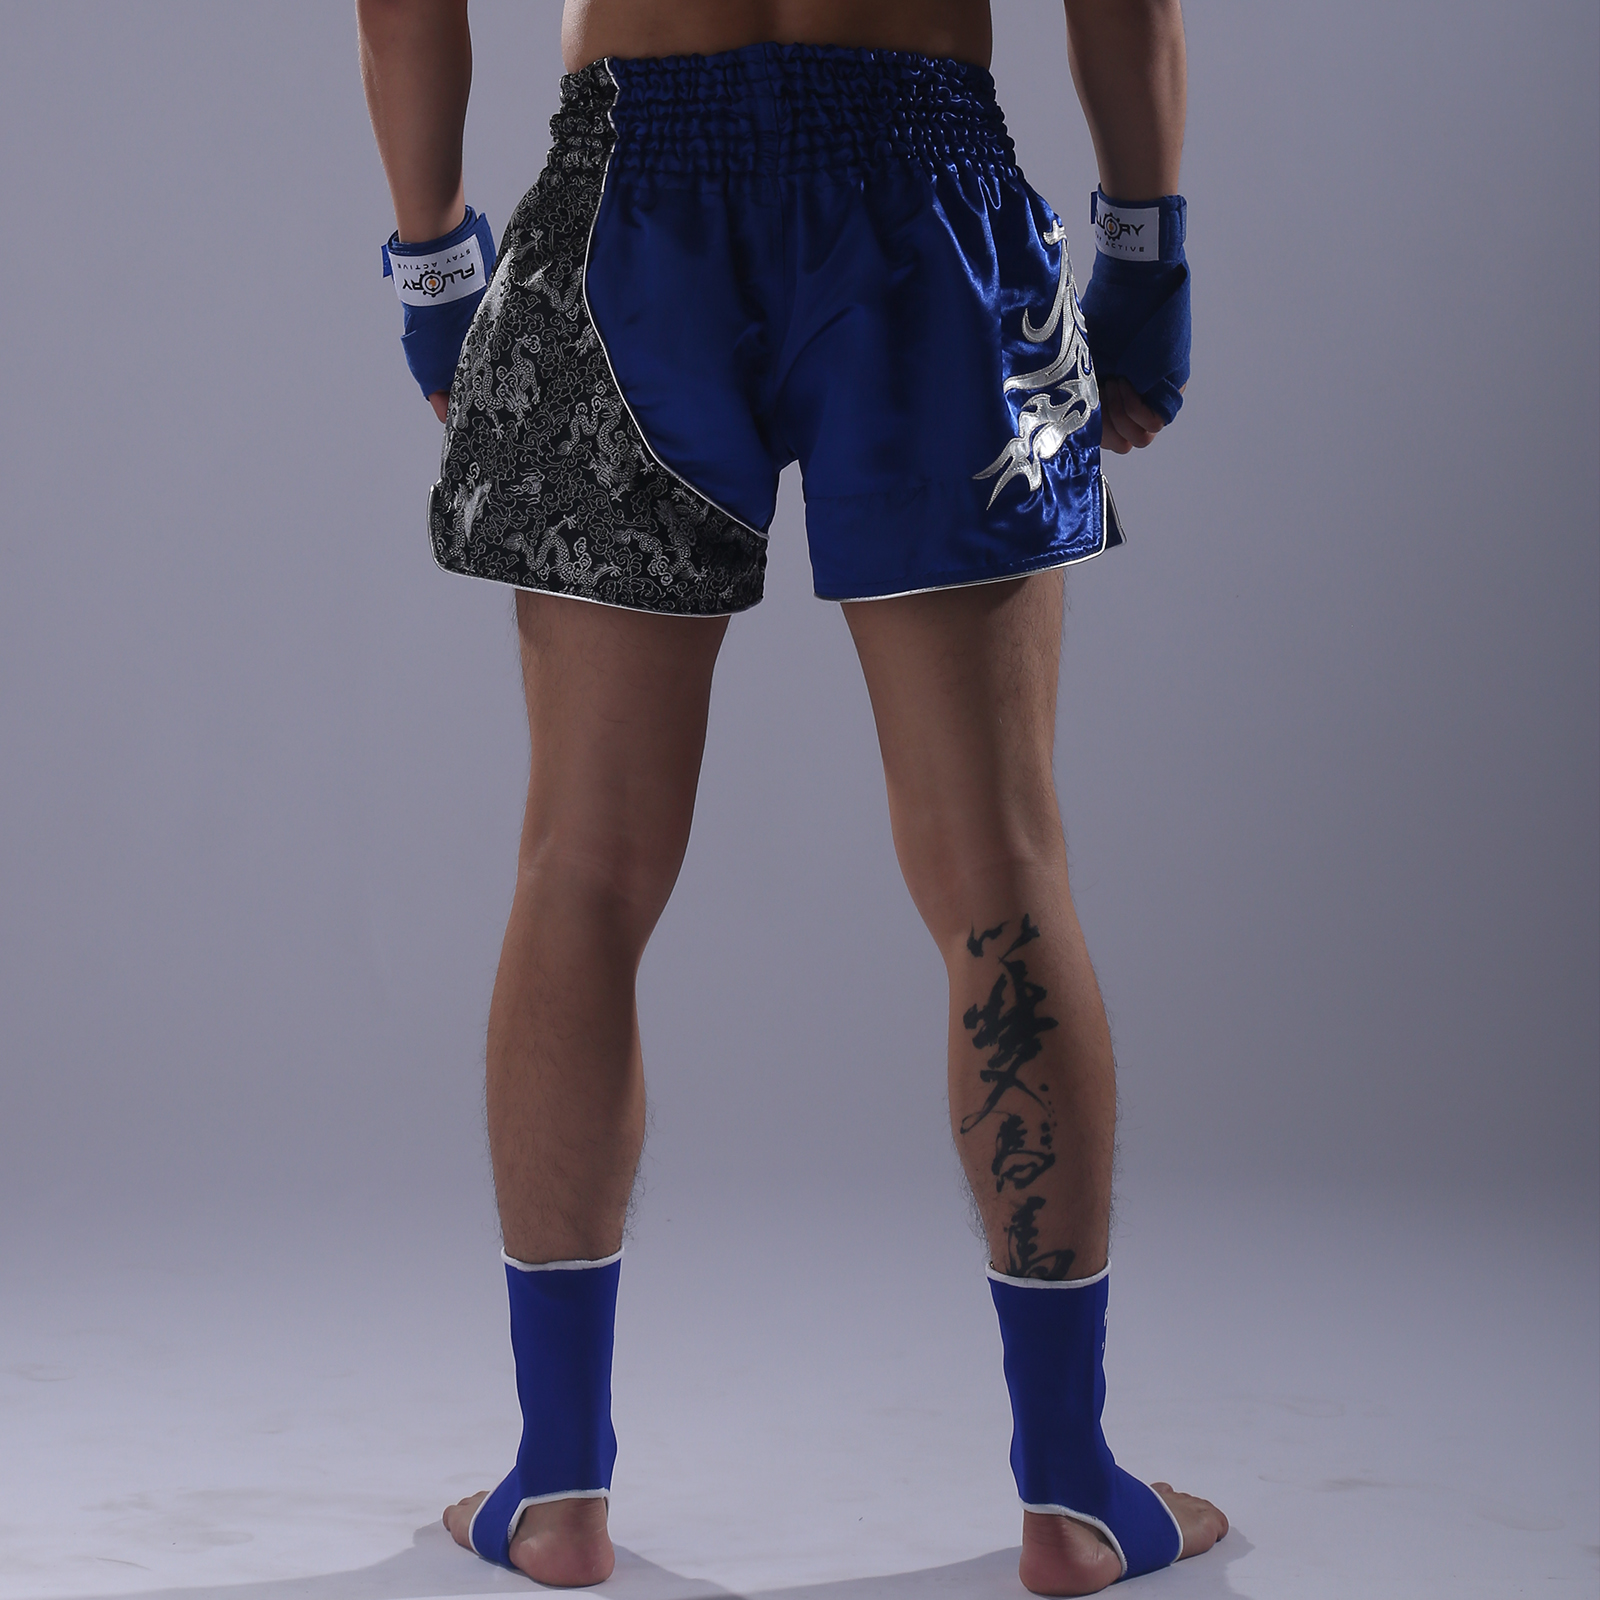 Nicolaslpm - Kit de Kick Boxing, Muay Thai. . .Short Sublimado